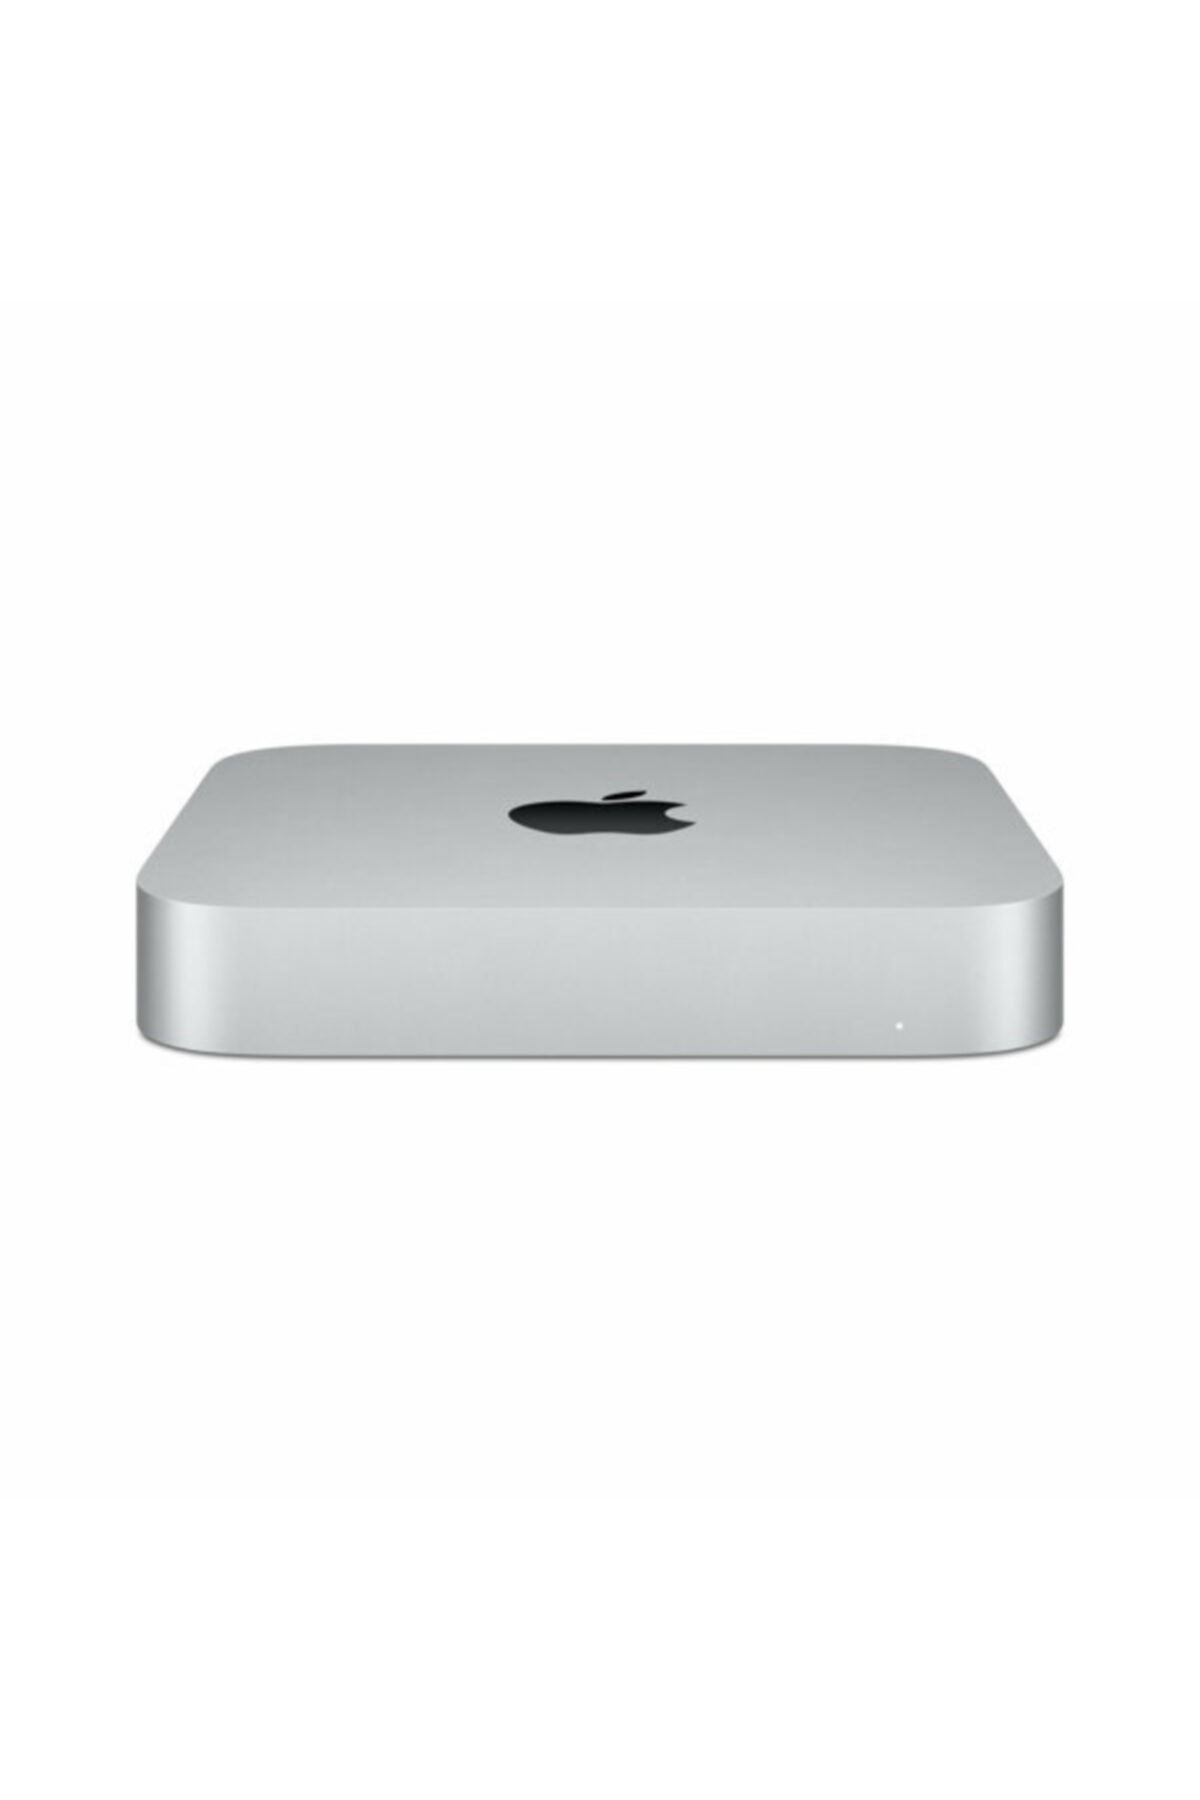 Apple Mac Mini M1 8c Cpu 8gb Ram 256gb Ssd Gümüş Mini Pc Mgnr3tu/a